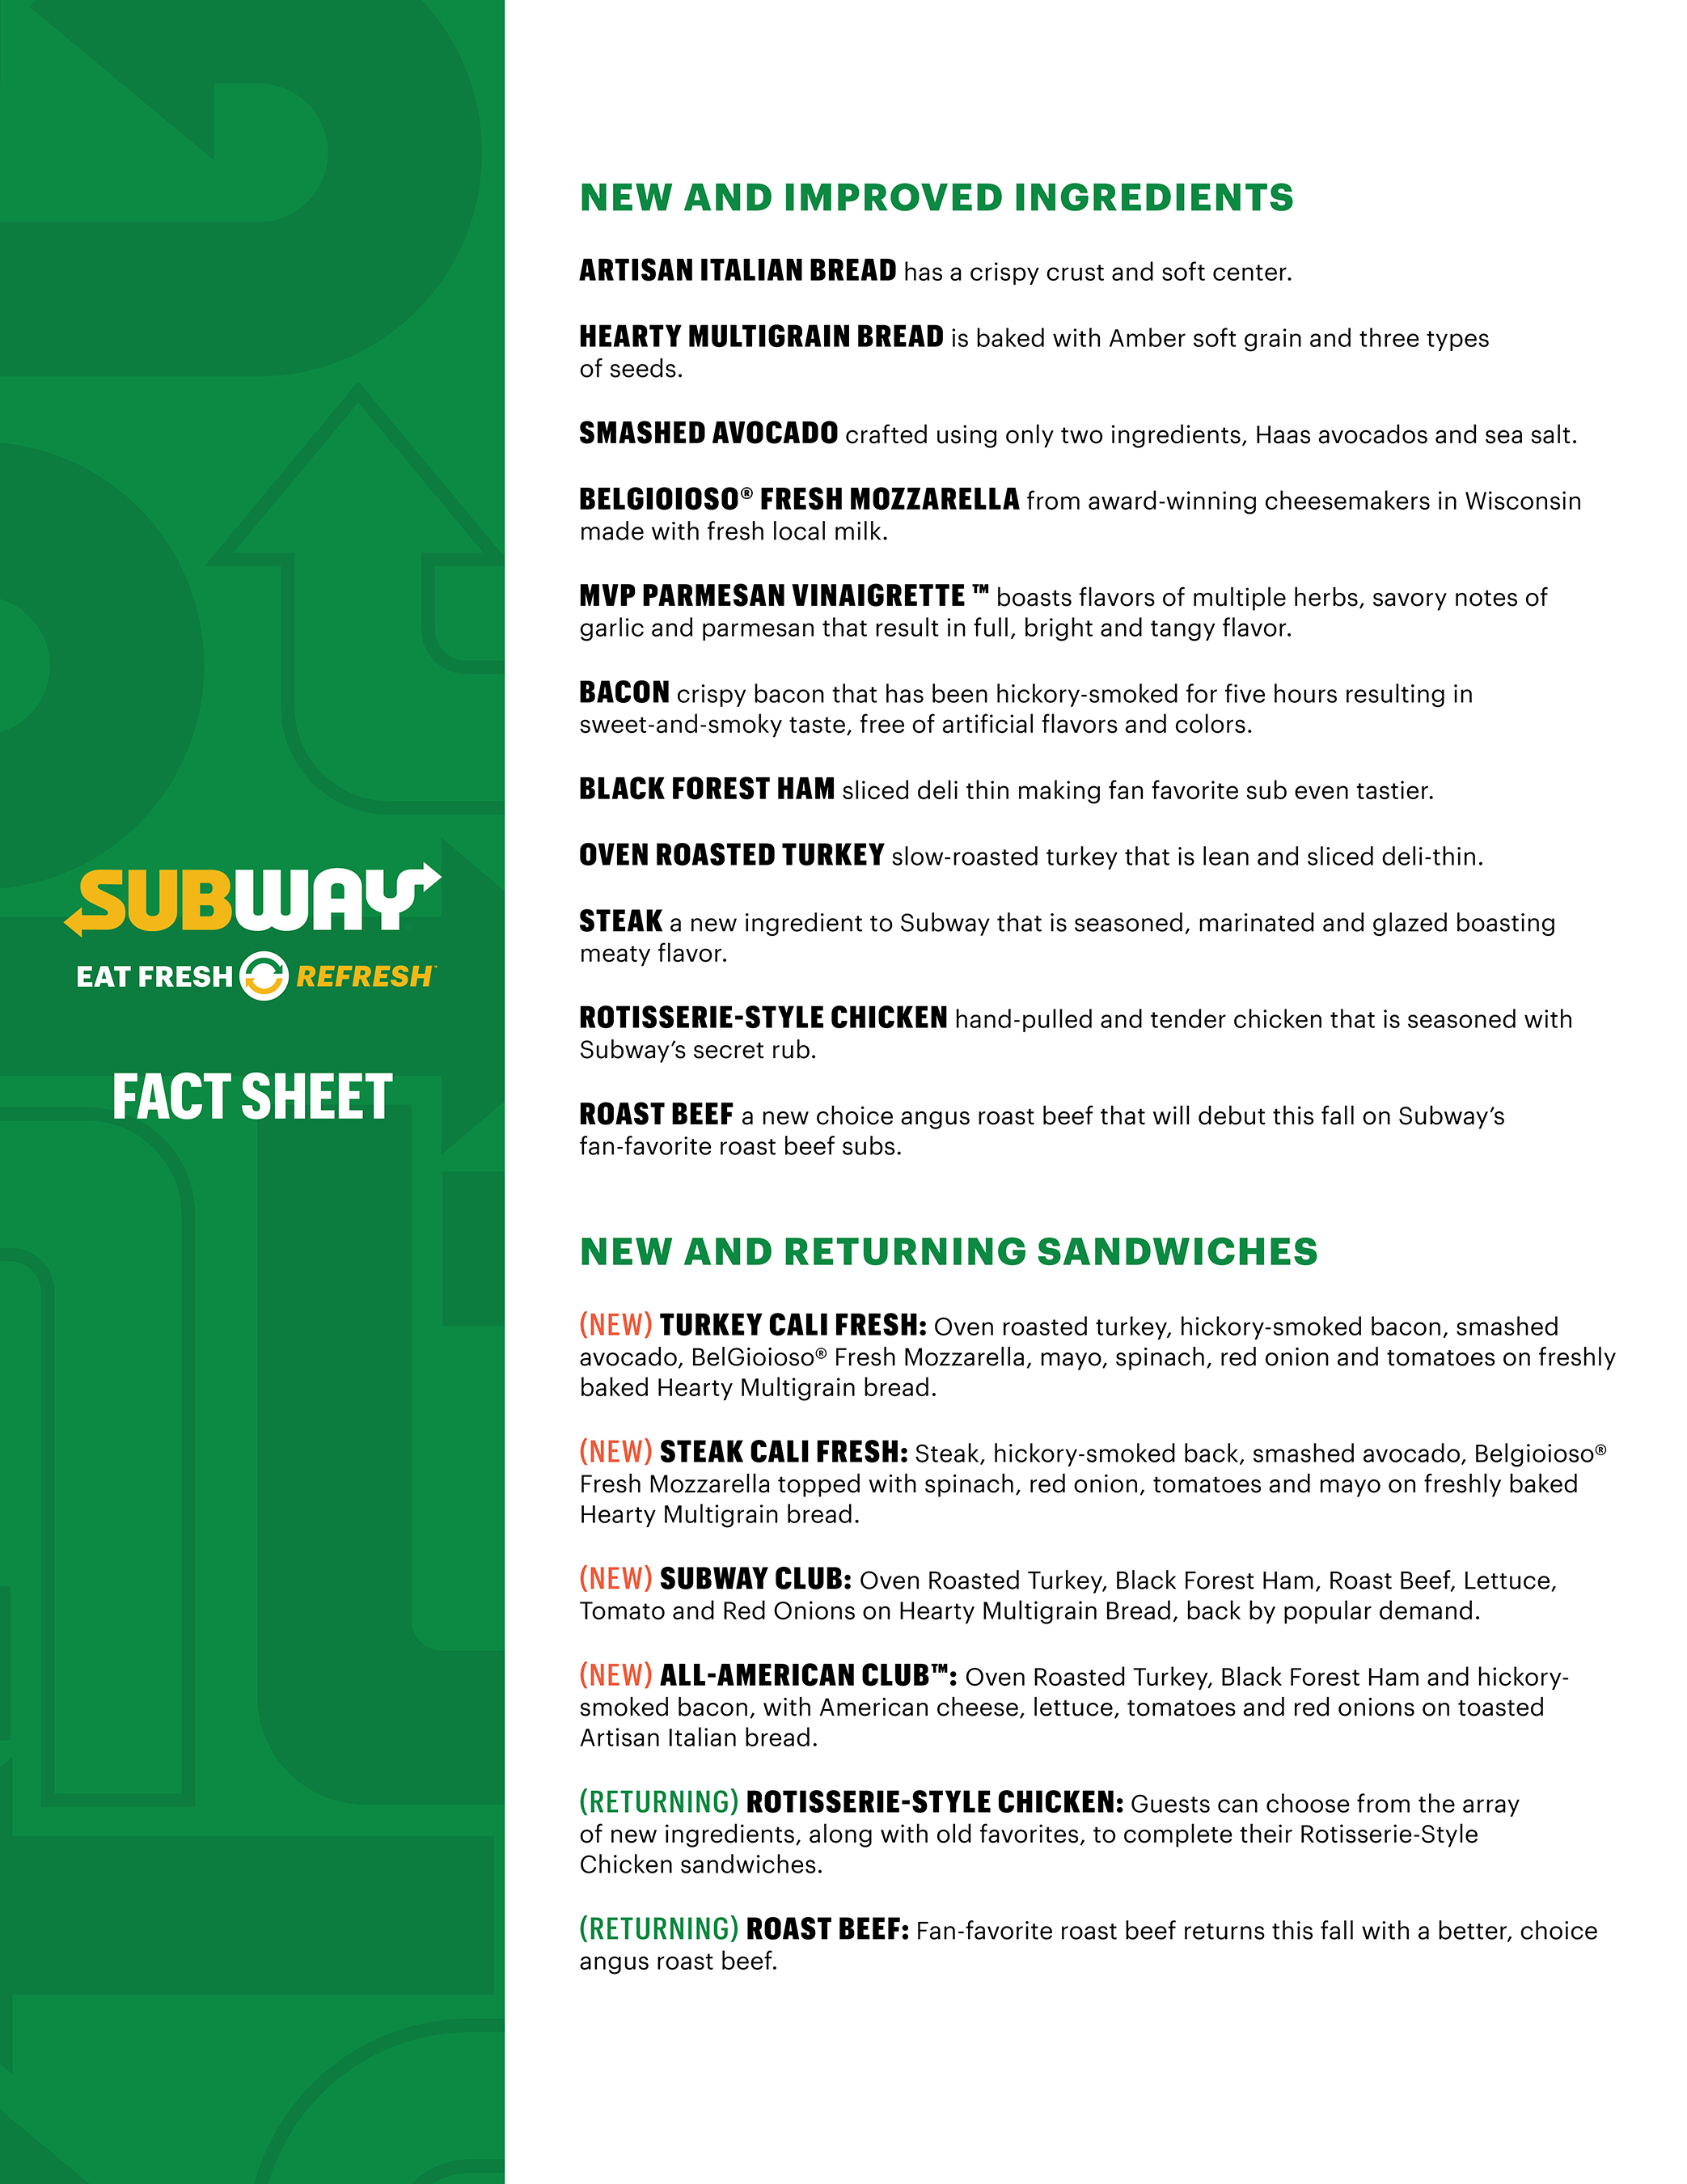 Subway® Eat Fresh Refresh™ Fact Sheet